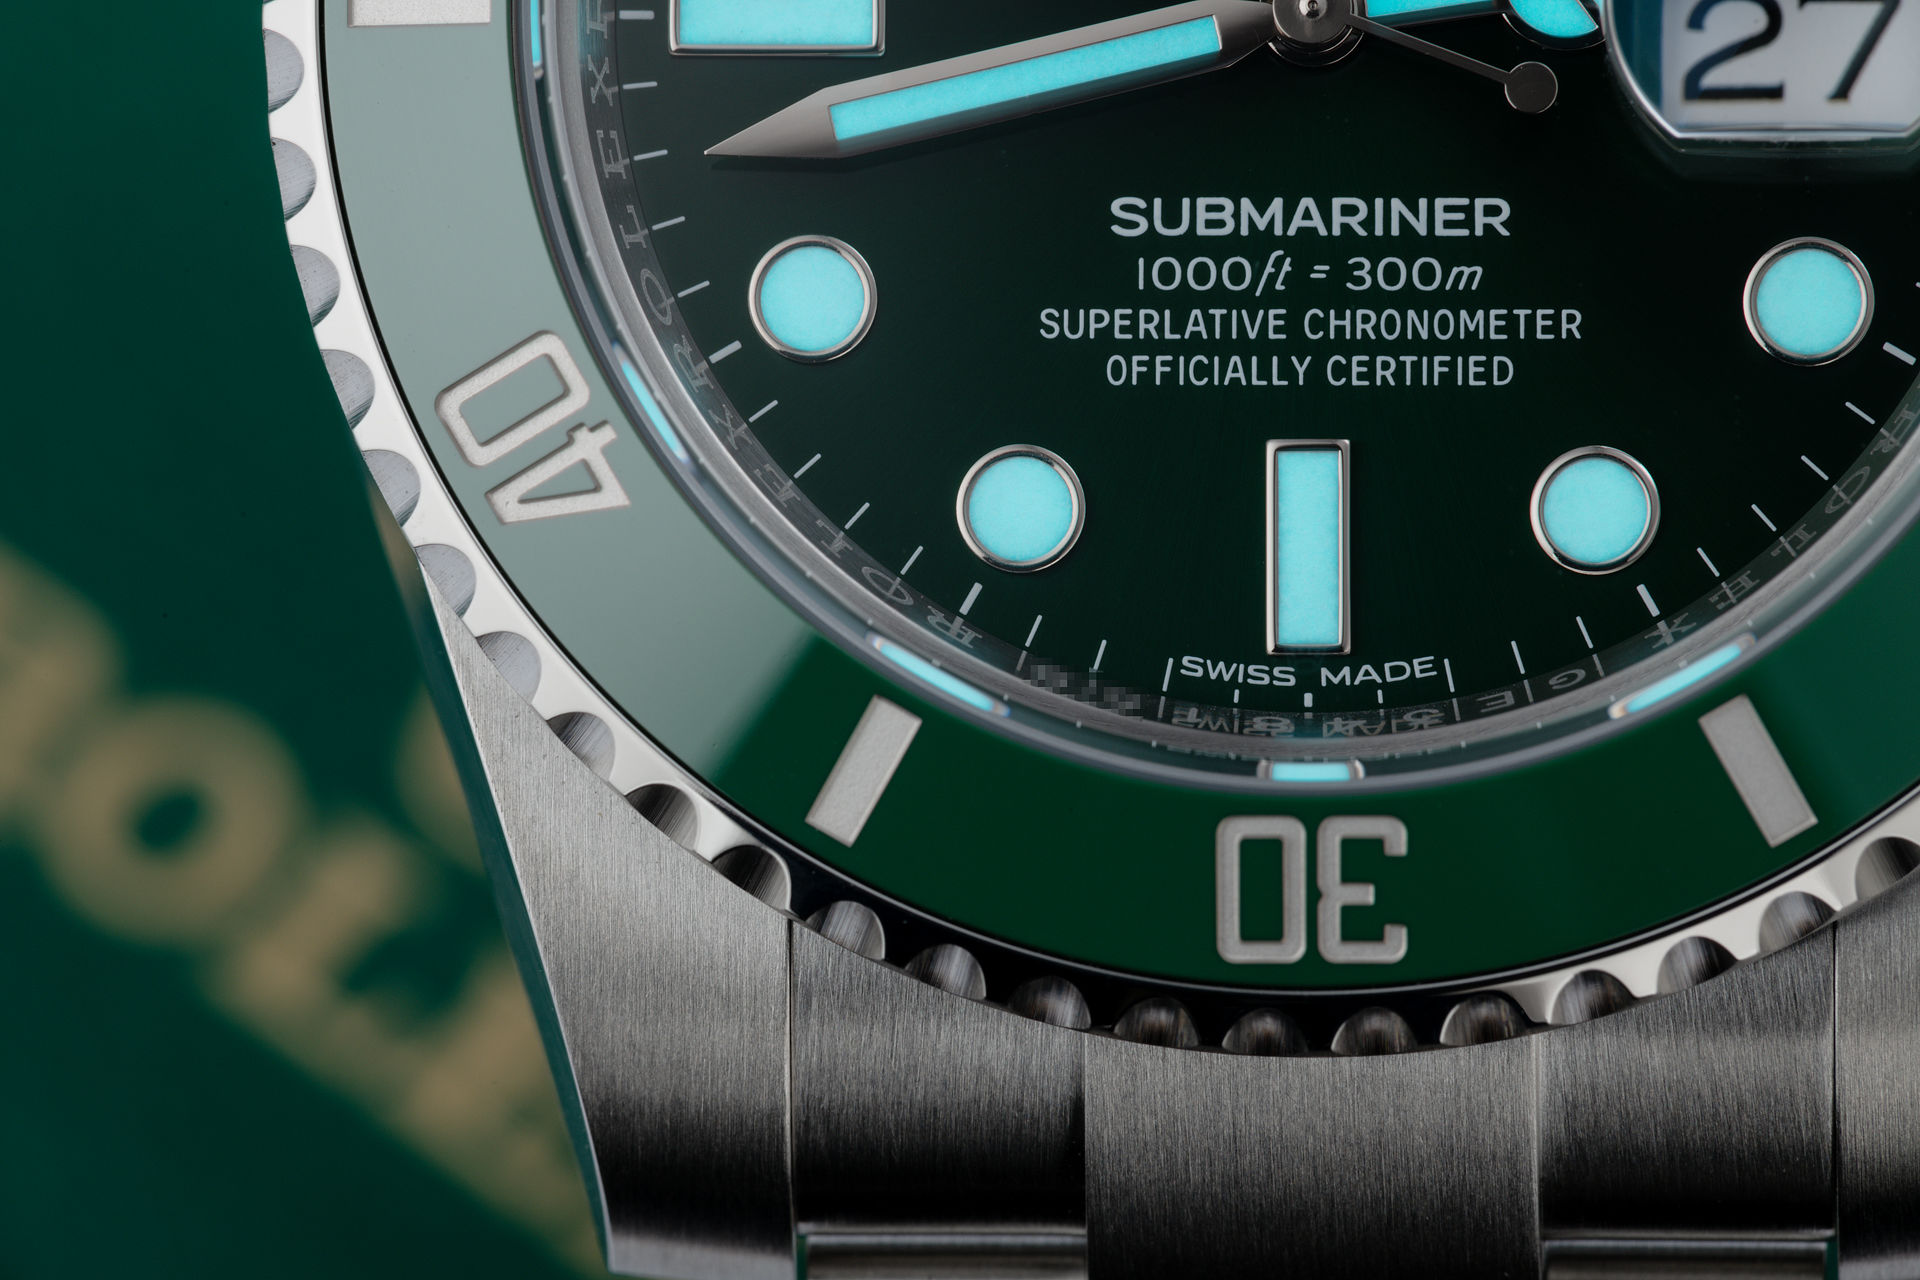 ref 116610LV | 'Brand New' 5 Year Warranty | Rolex Submariner Date